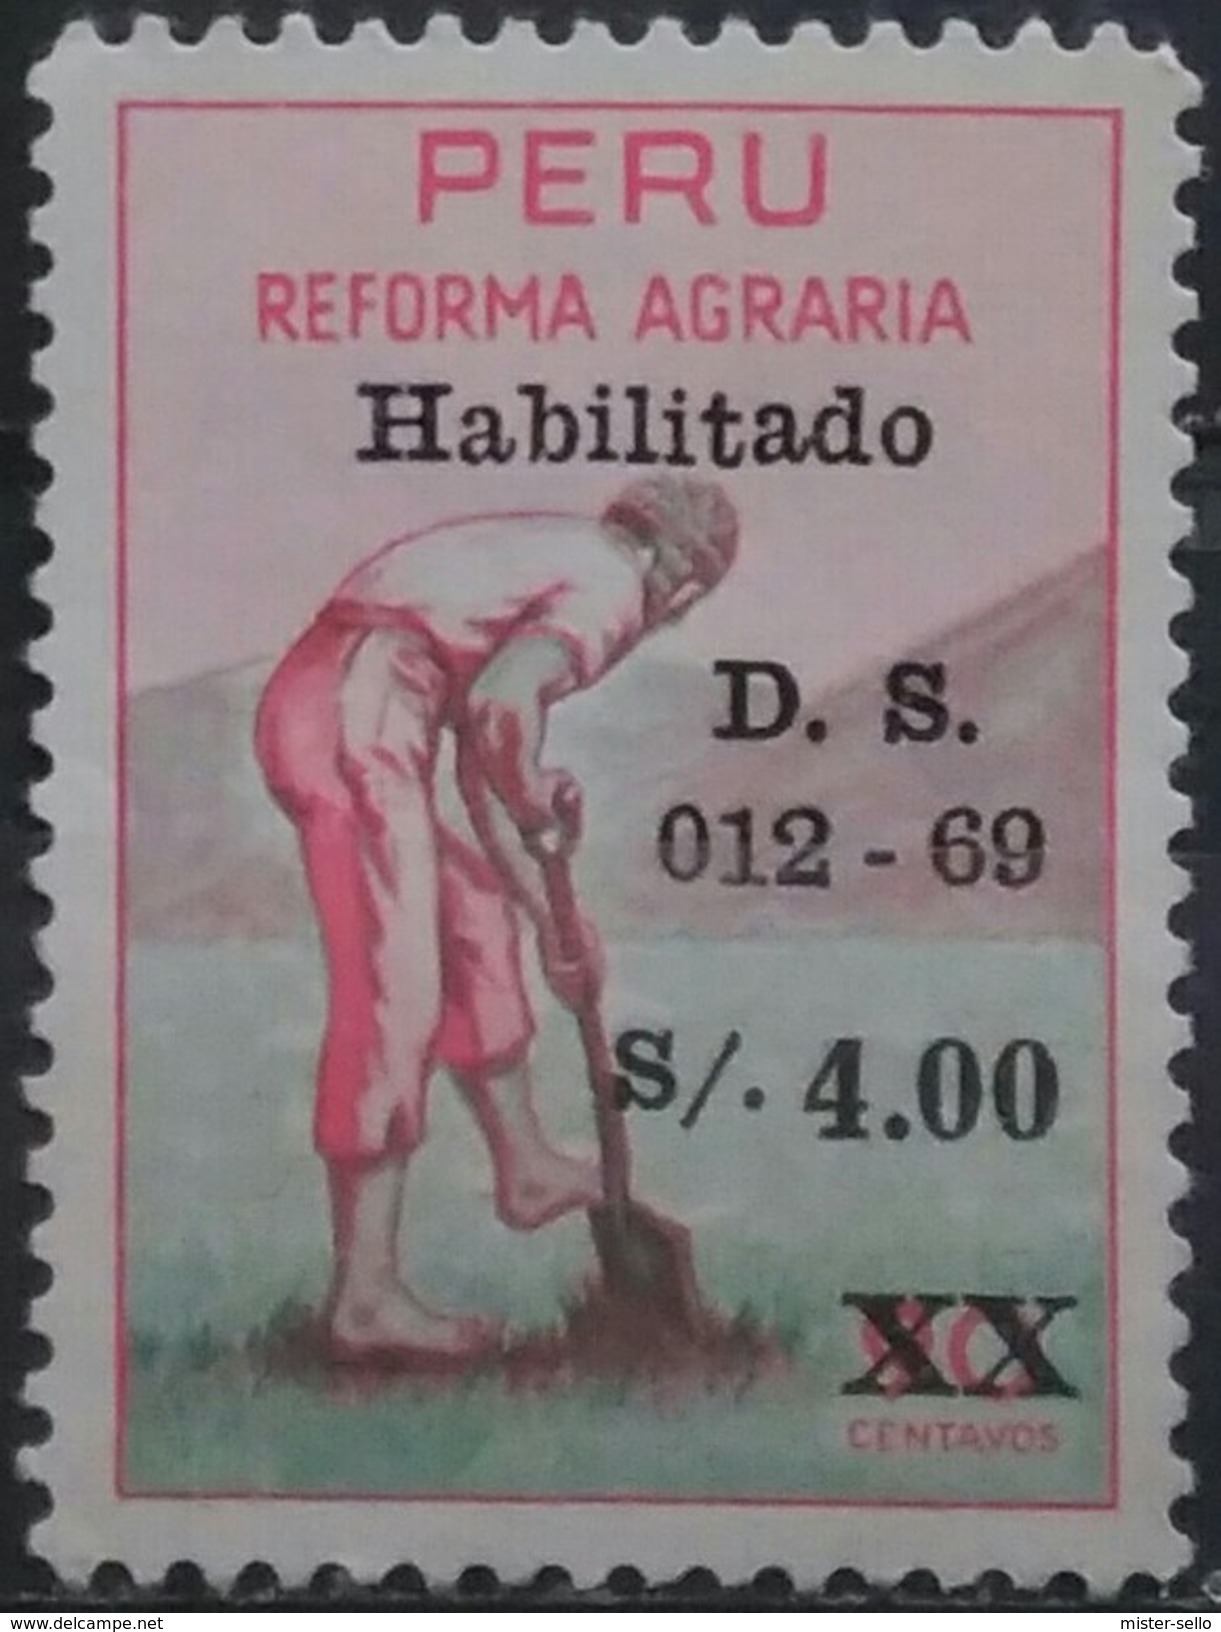 PERÚ 1969 Reforma Agraria. Serie No Emitida Sobrecargada. Lima. USADO - USED. - Peru